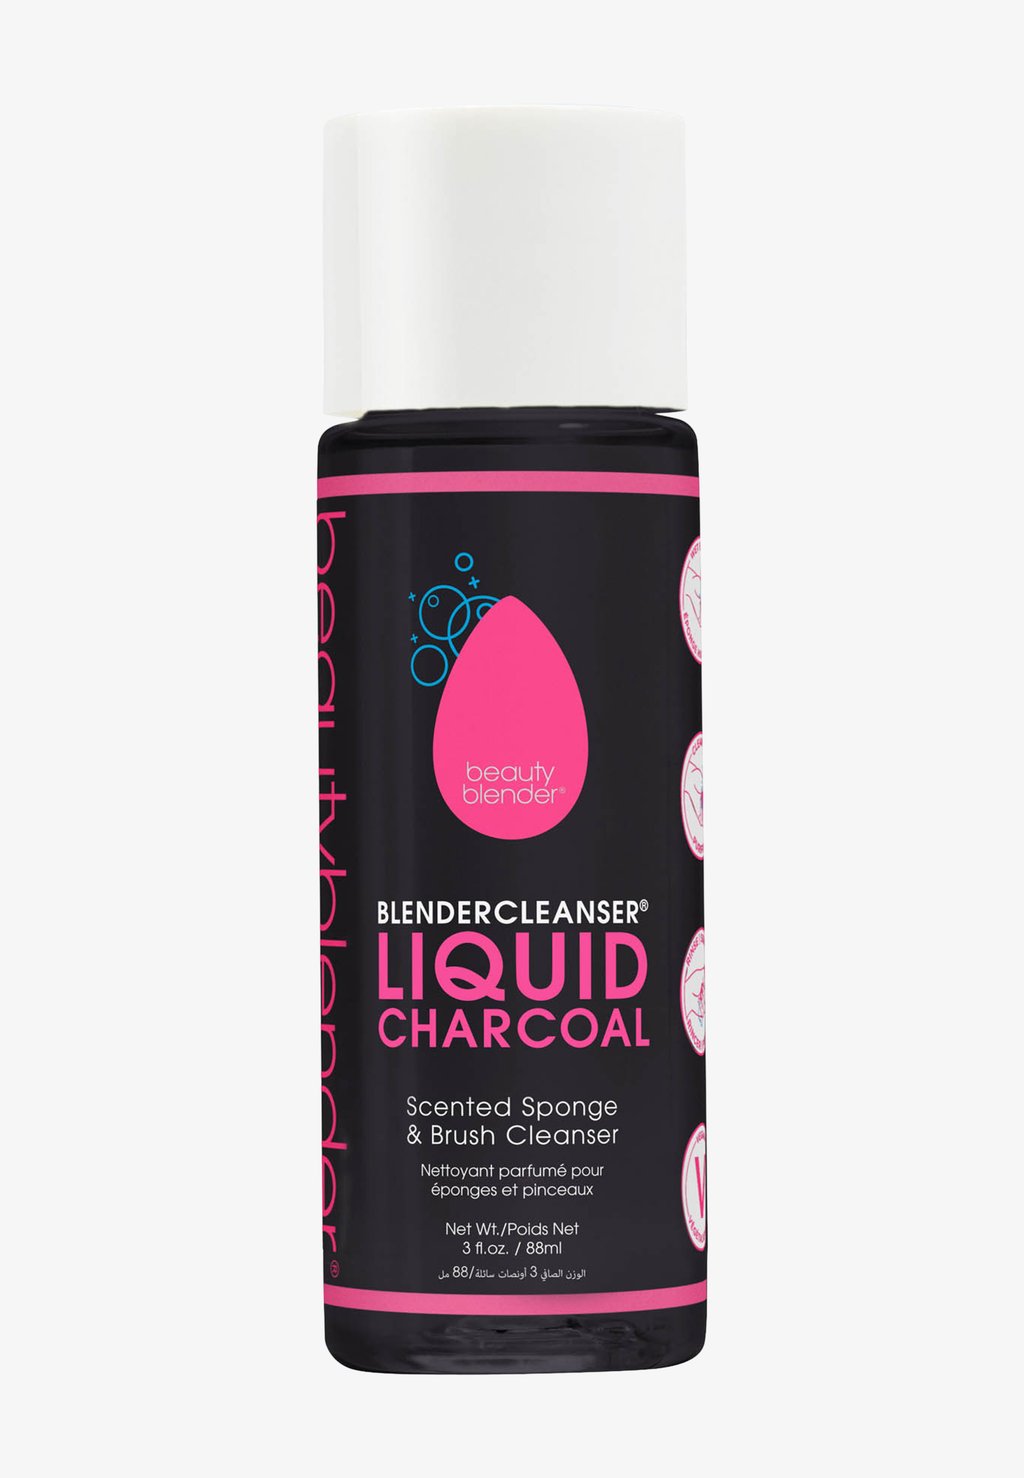 Моющее средство Blendercleanser Liquid Charcoal BEAUTYBLENDER мыло для очистки спонжей beautyblender solid blendercleanser 30 г